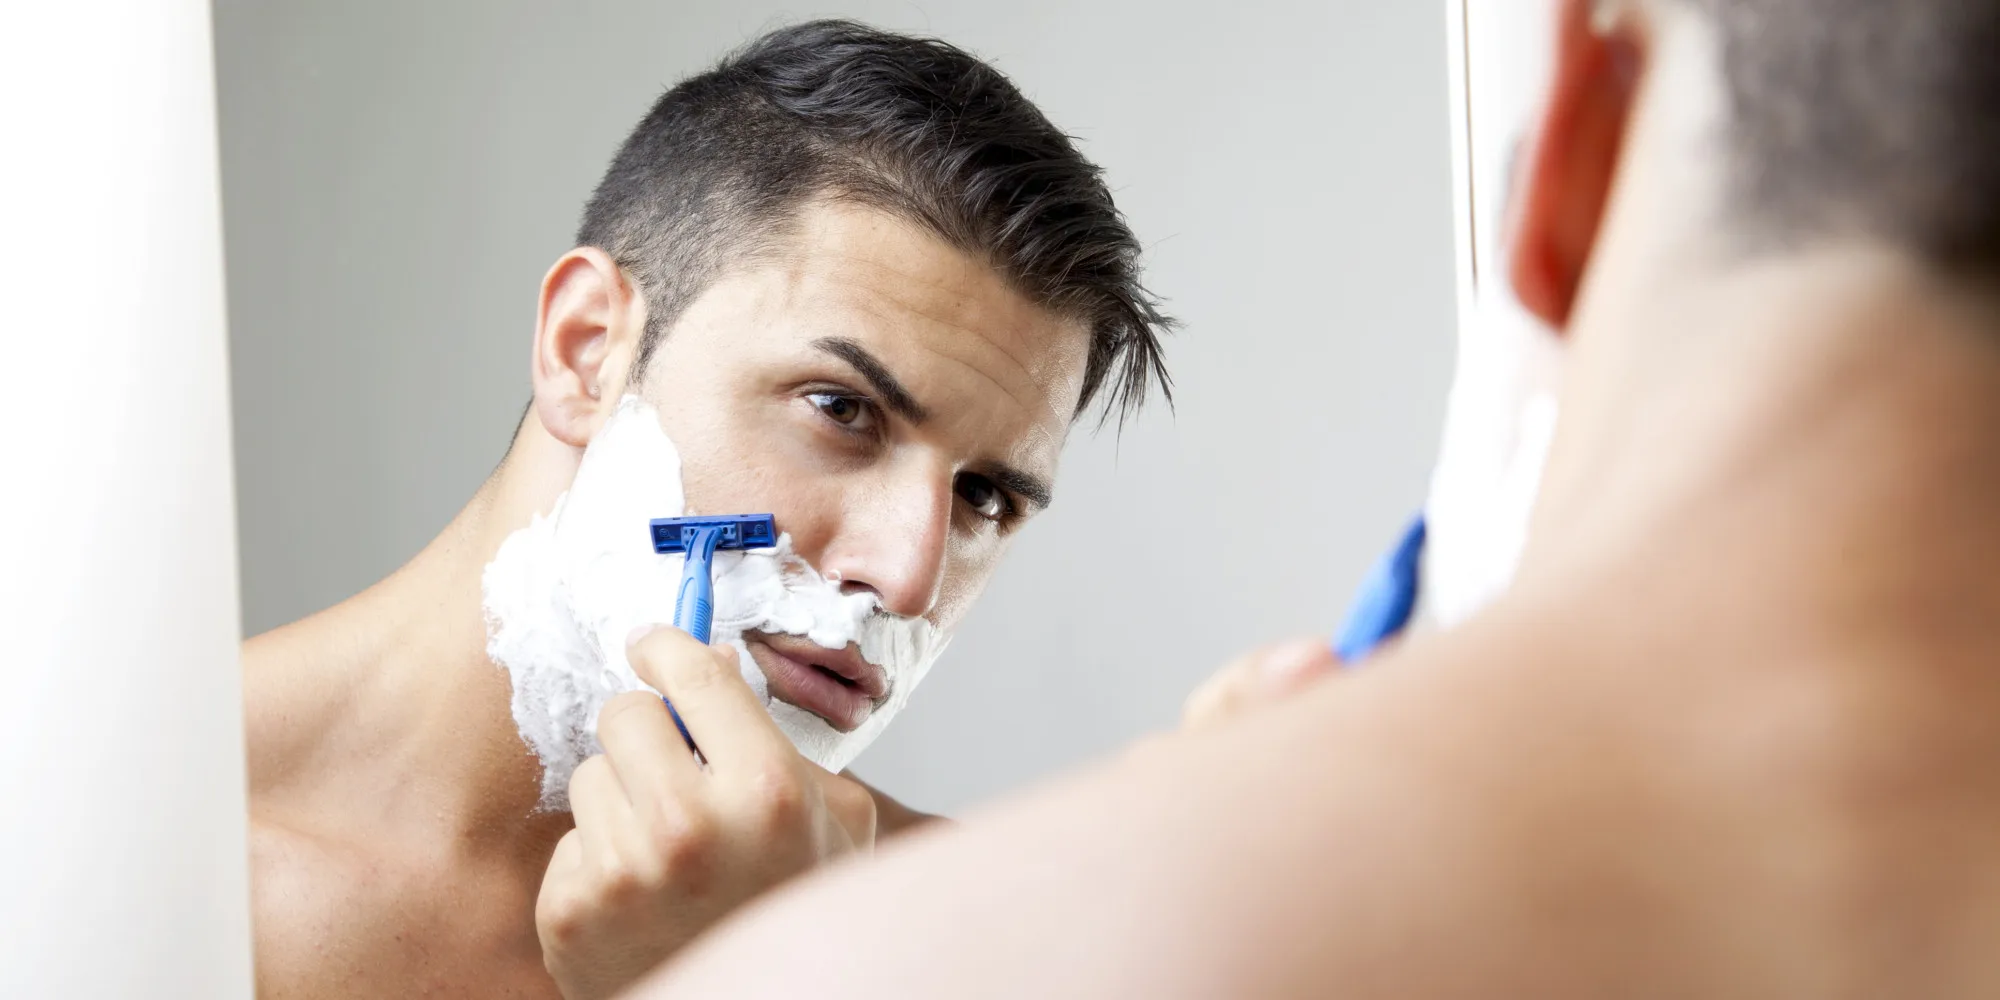 Как избавиться от прыщей с помощью пены для бритья